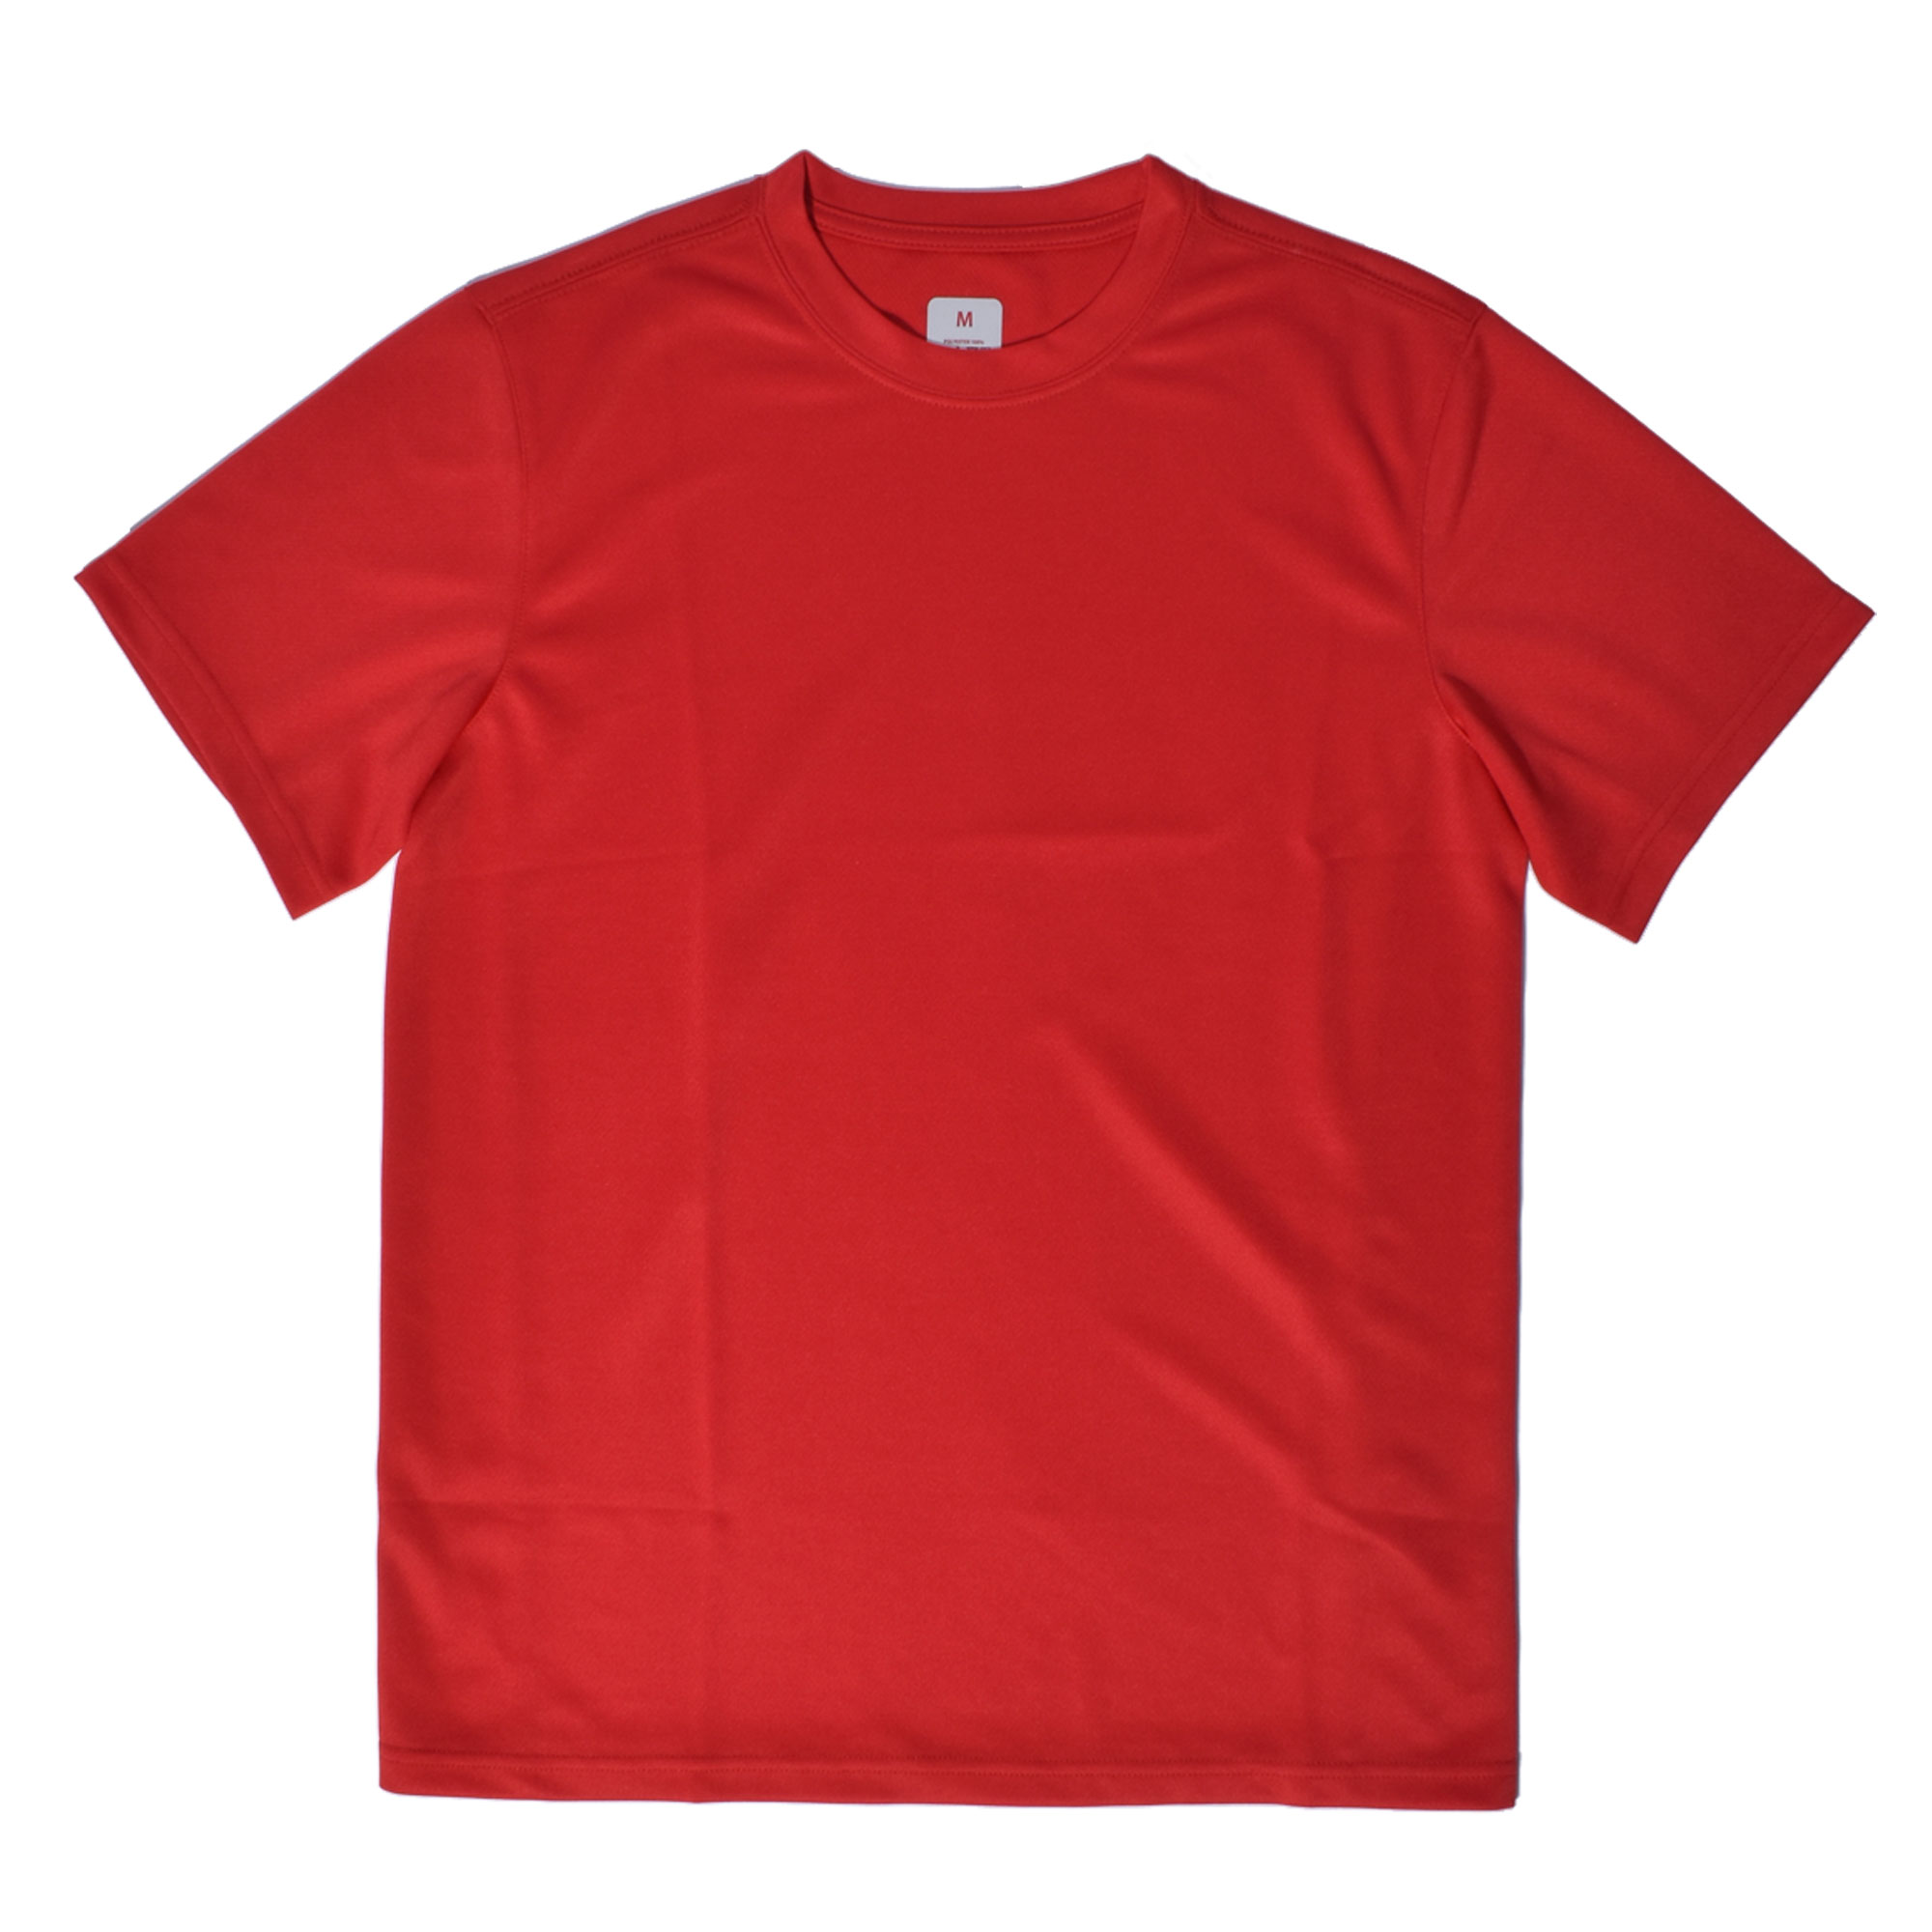 （ゆうパケット送料無料） ウエア メンズ オリジナルランニングTシャツ 黒 レッド 赤 青 ピンク ...